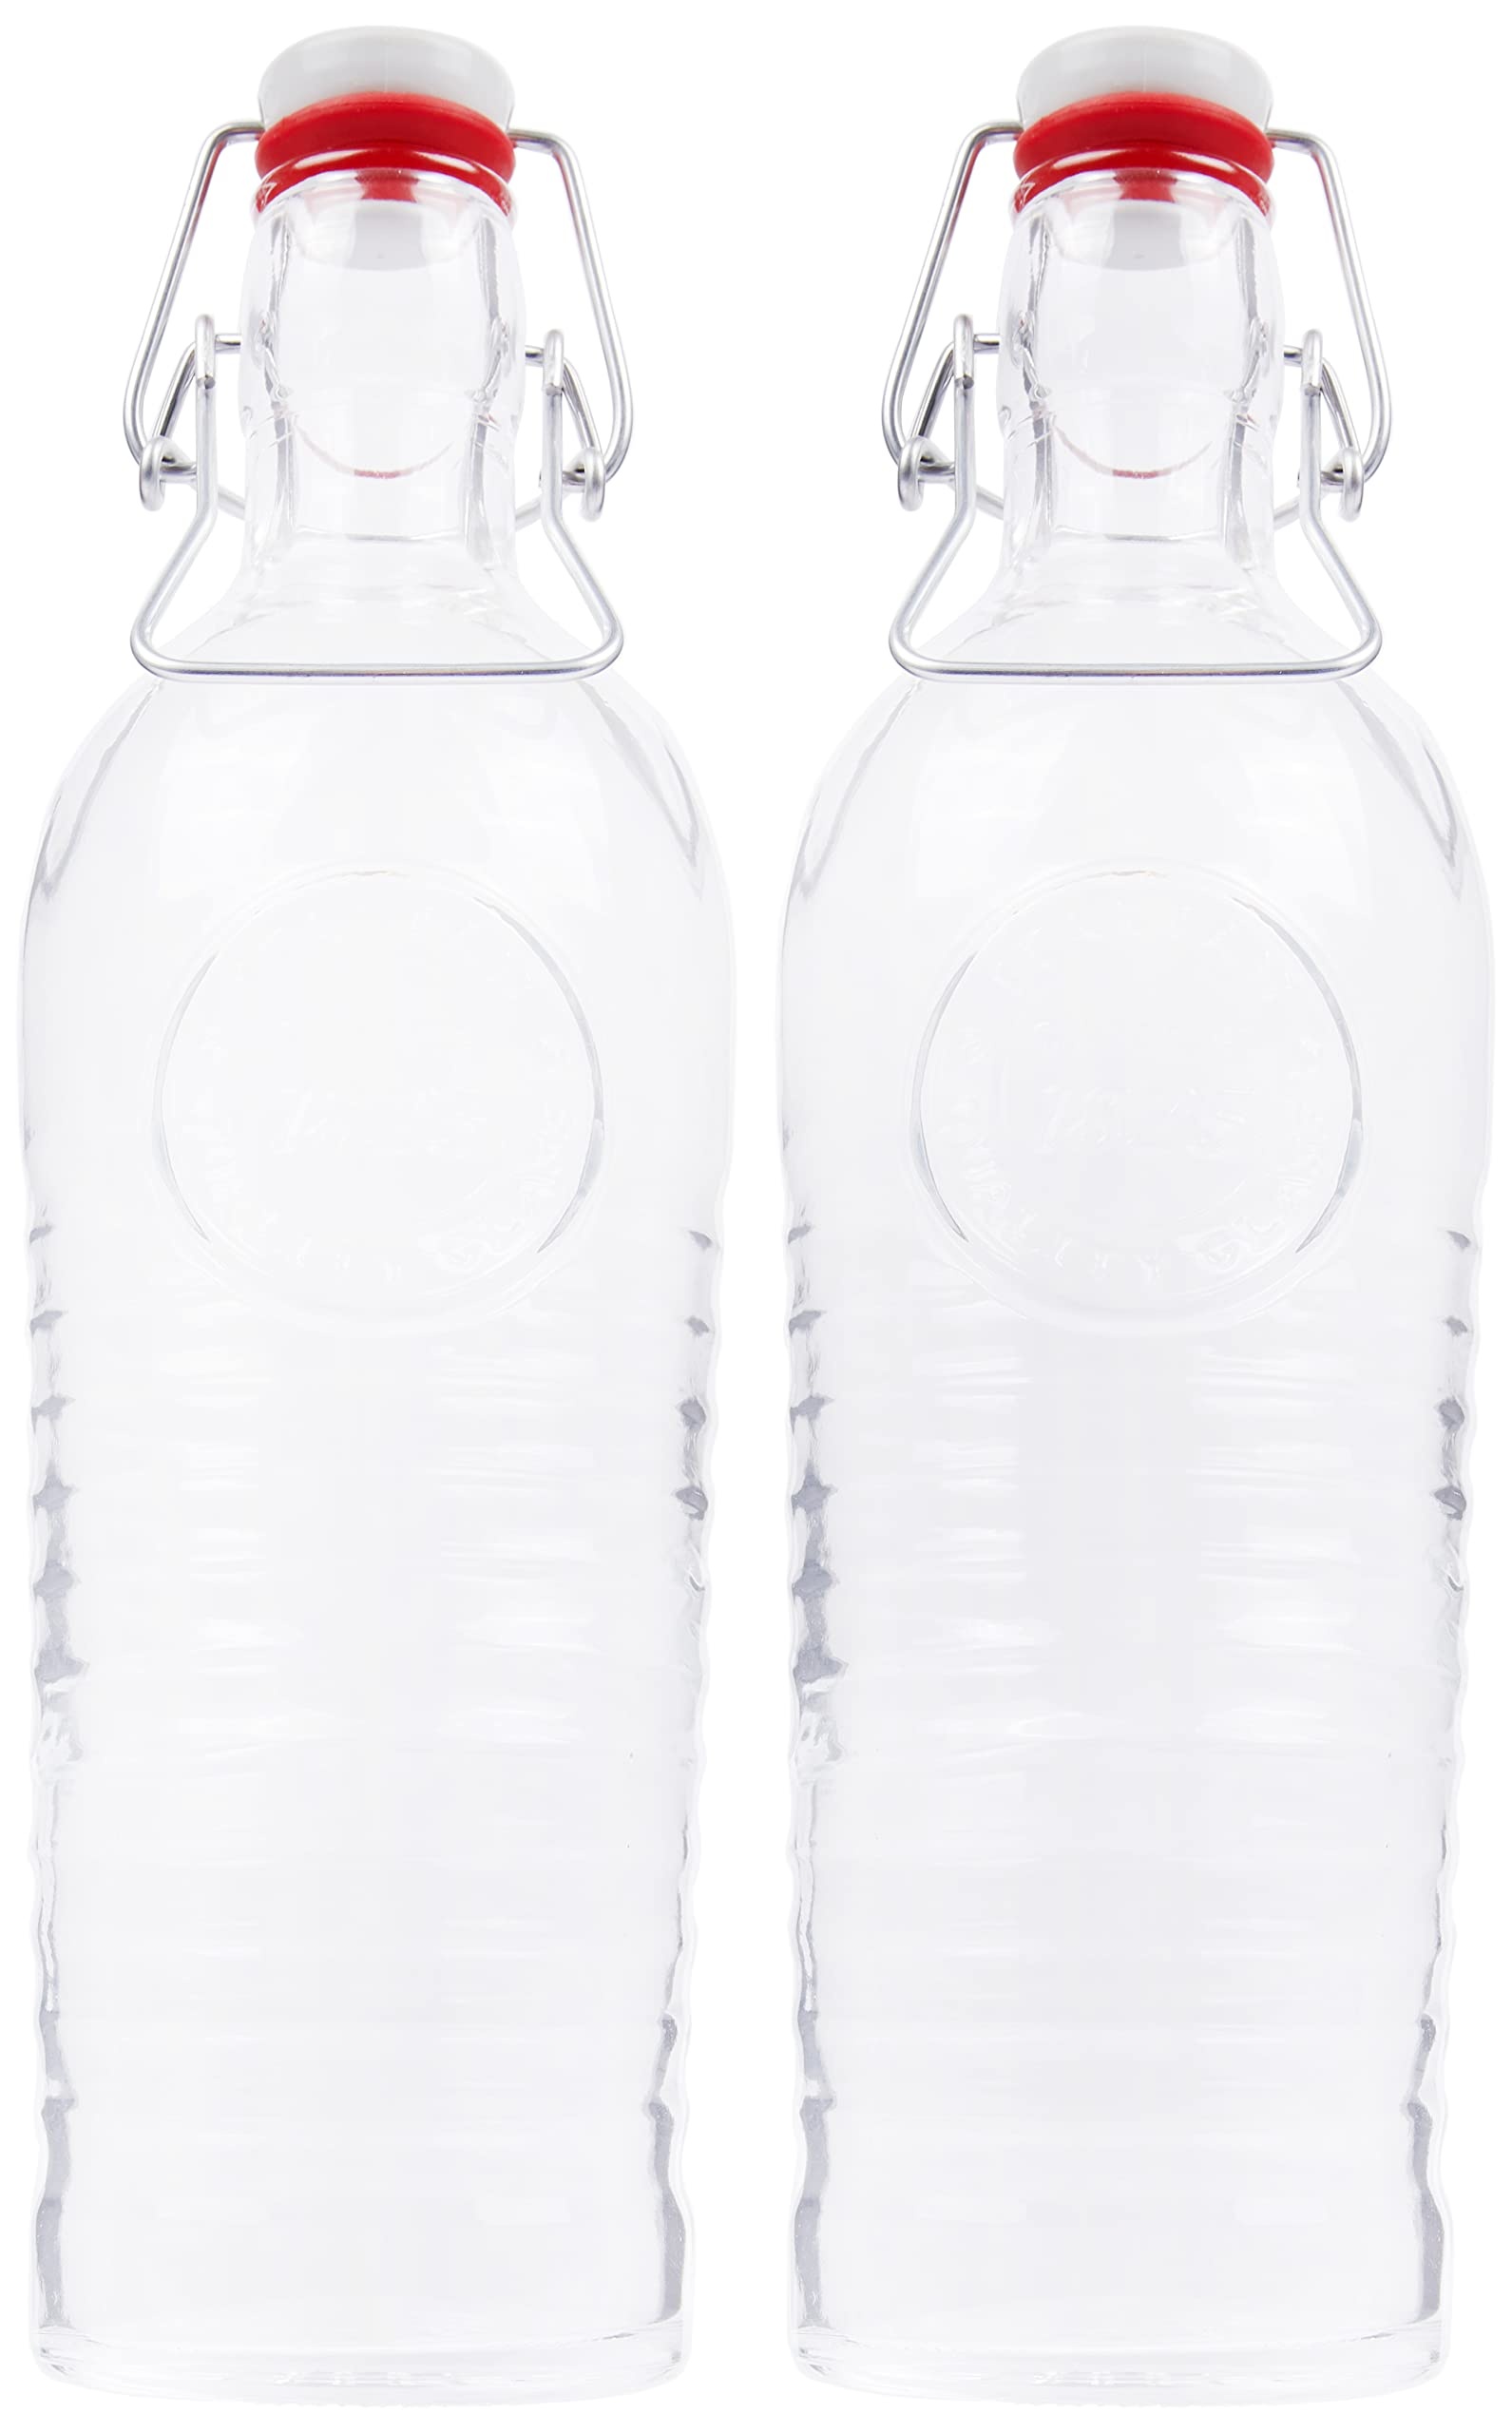 Bild 2er Set Glasflasche Officina 1825 - geriffelte 1,2 Liter Flasche mit Bügelverschluss und Relief Verzierung,